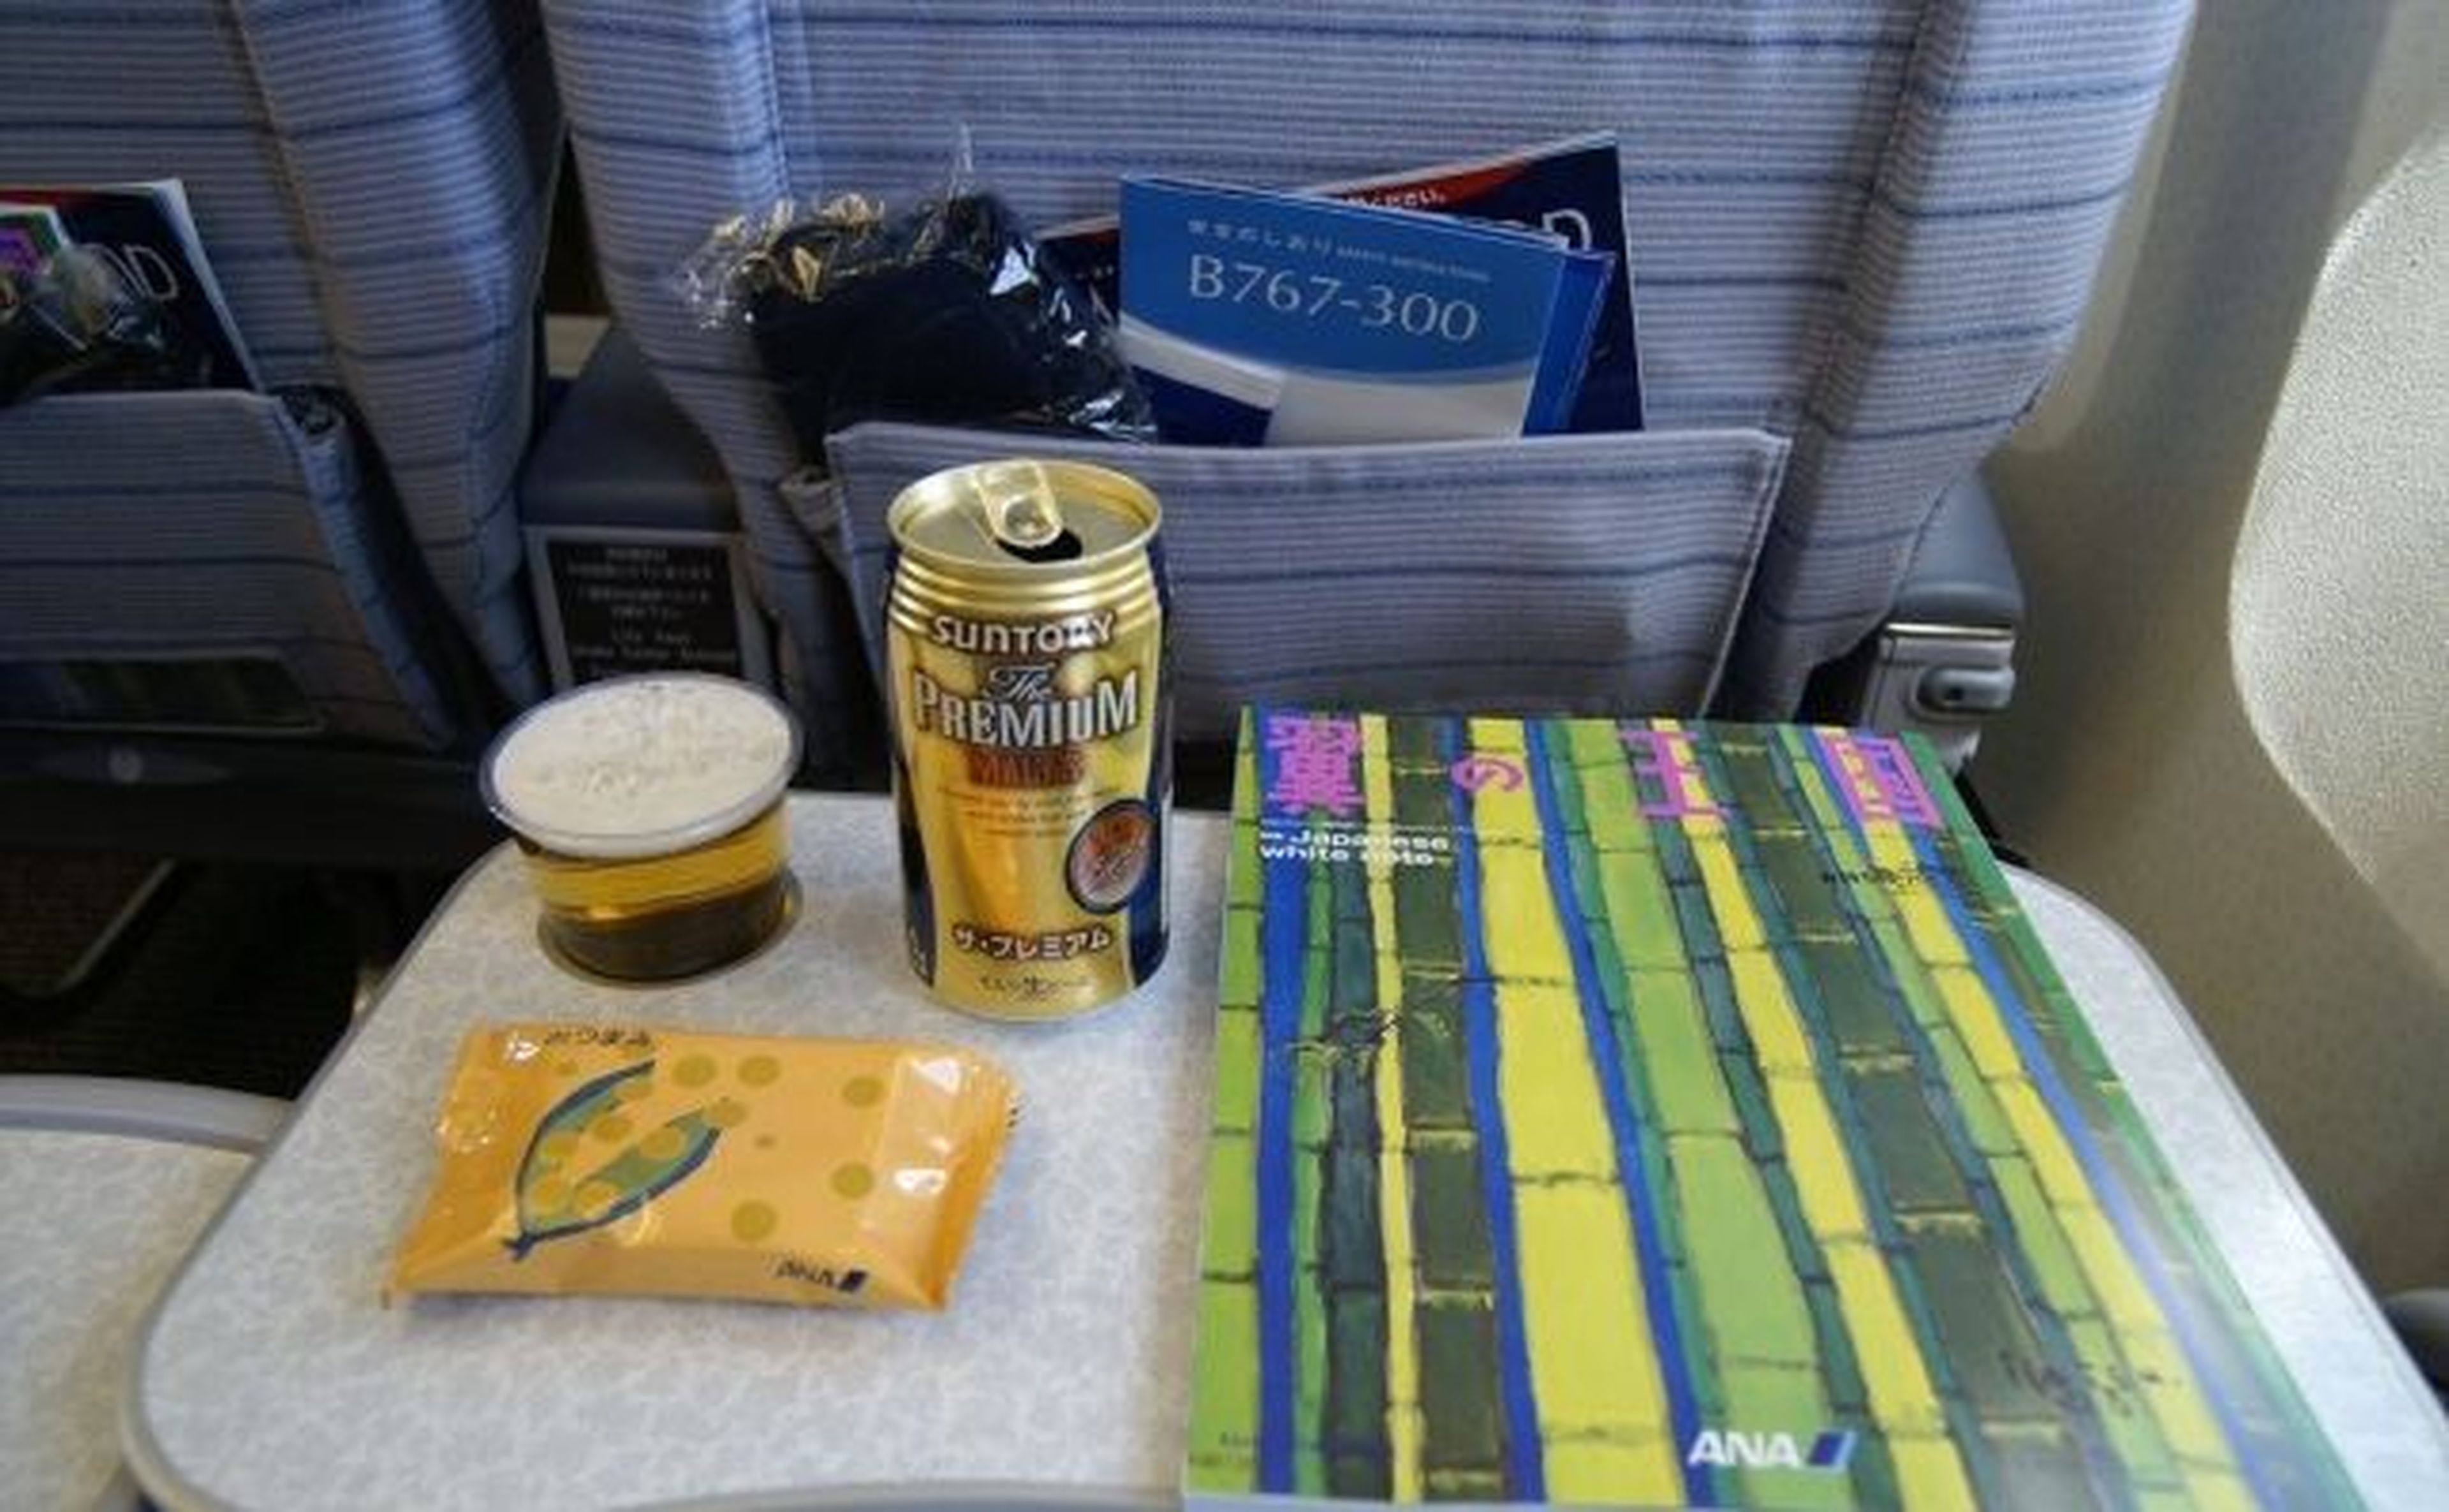 Una o dos latas de cerveza en un vuelo de 10 horas es una medida aceptada.